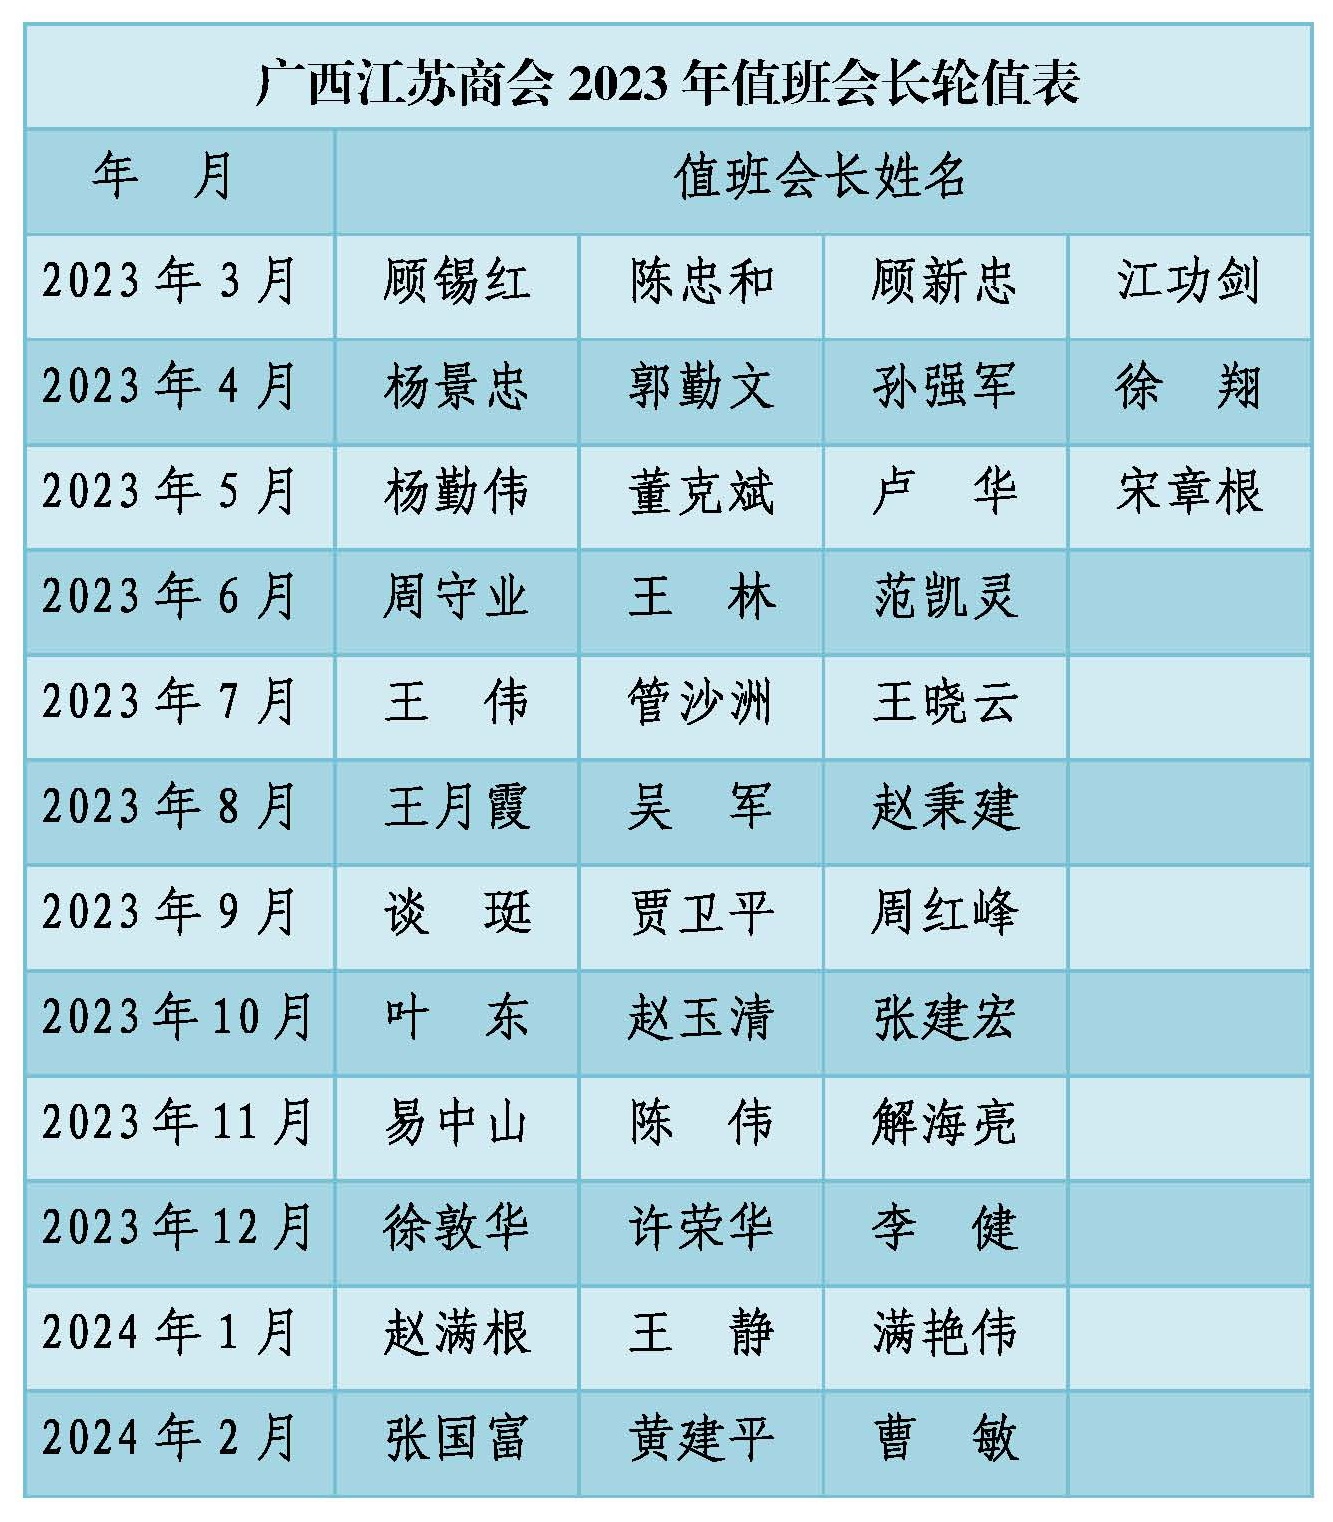 广西江苏商会2023年值班会长轮值表_看图王.jpg